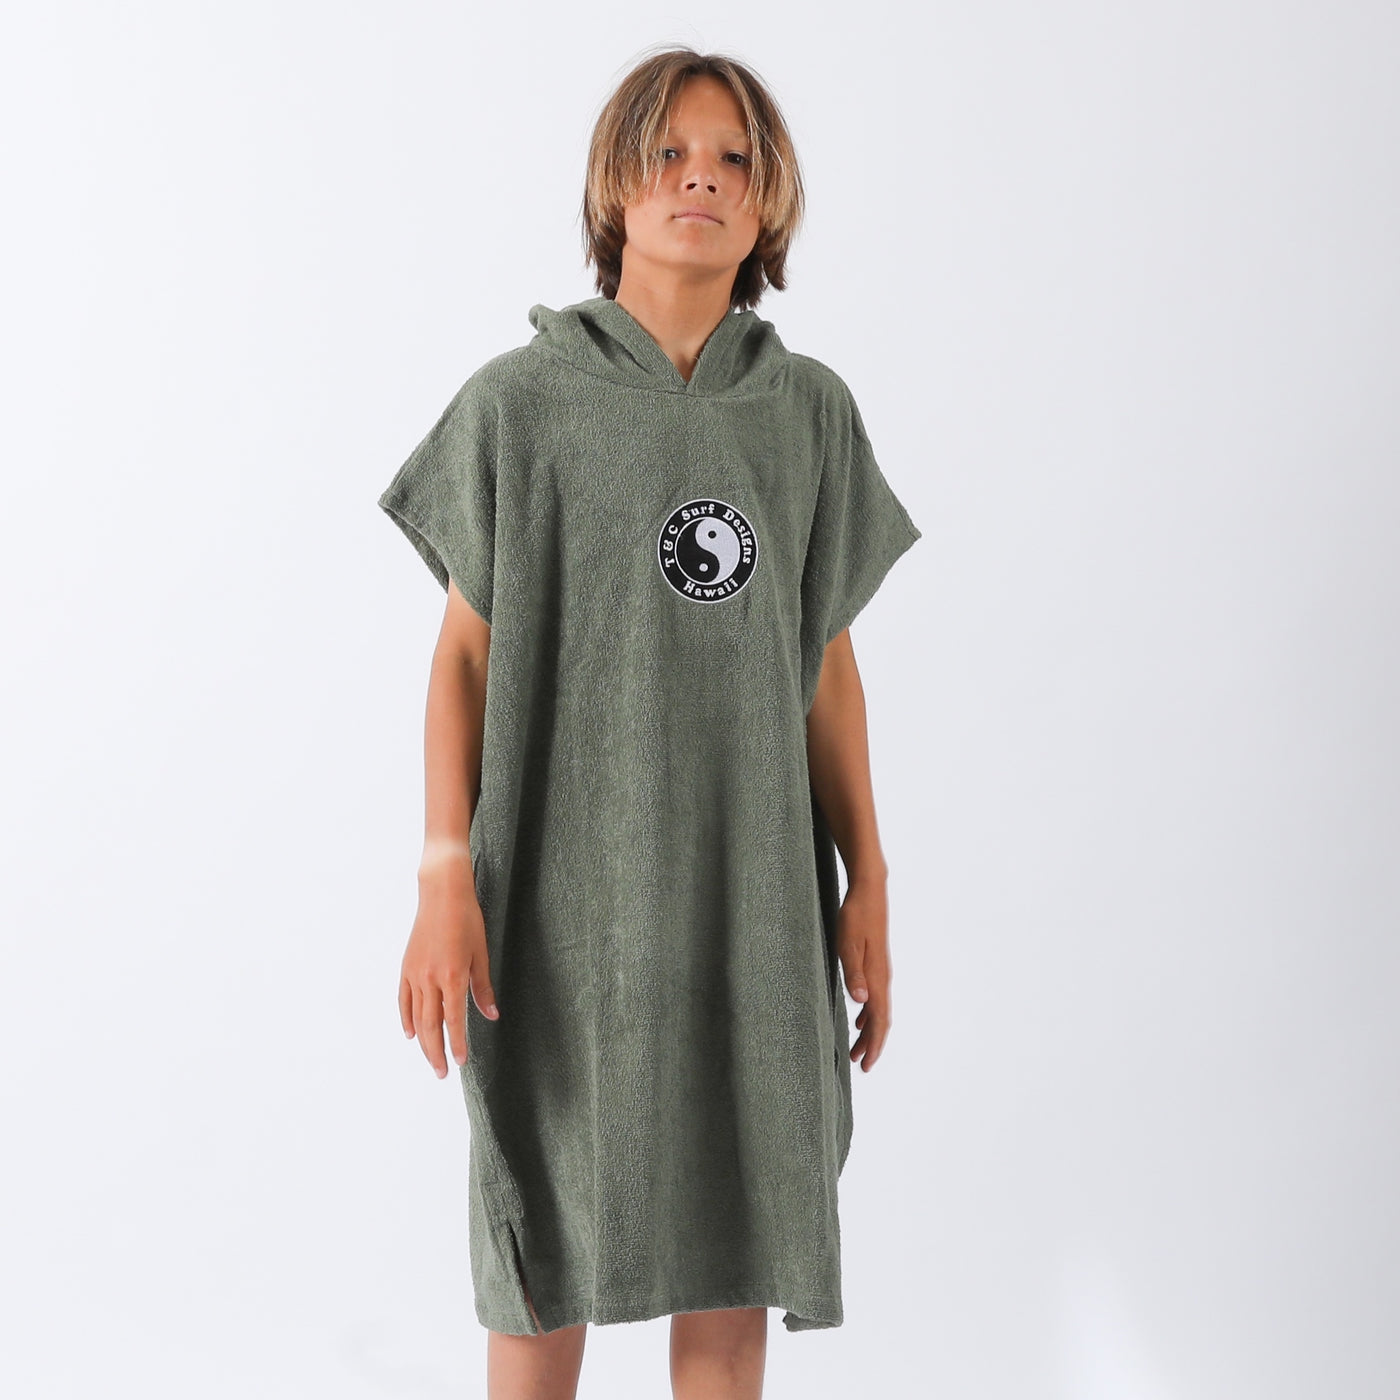 Boys OG CF Hooded Towel - Military